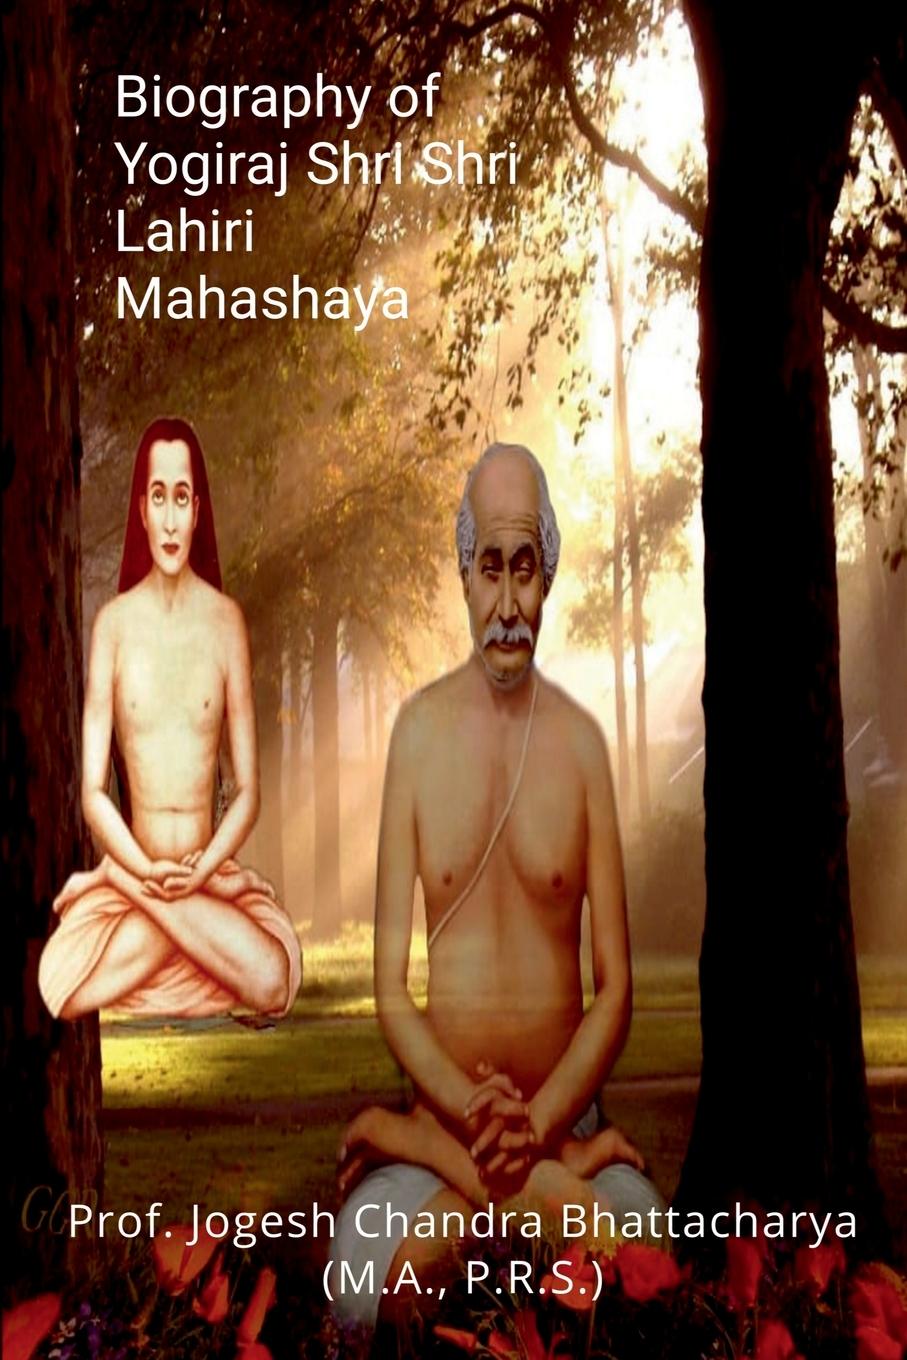 Könyv Biography of Yogiraj Shri Shri Lahiri Mahashaya 